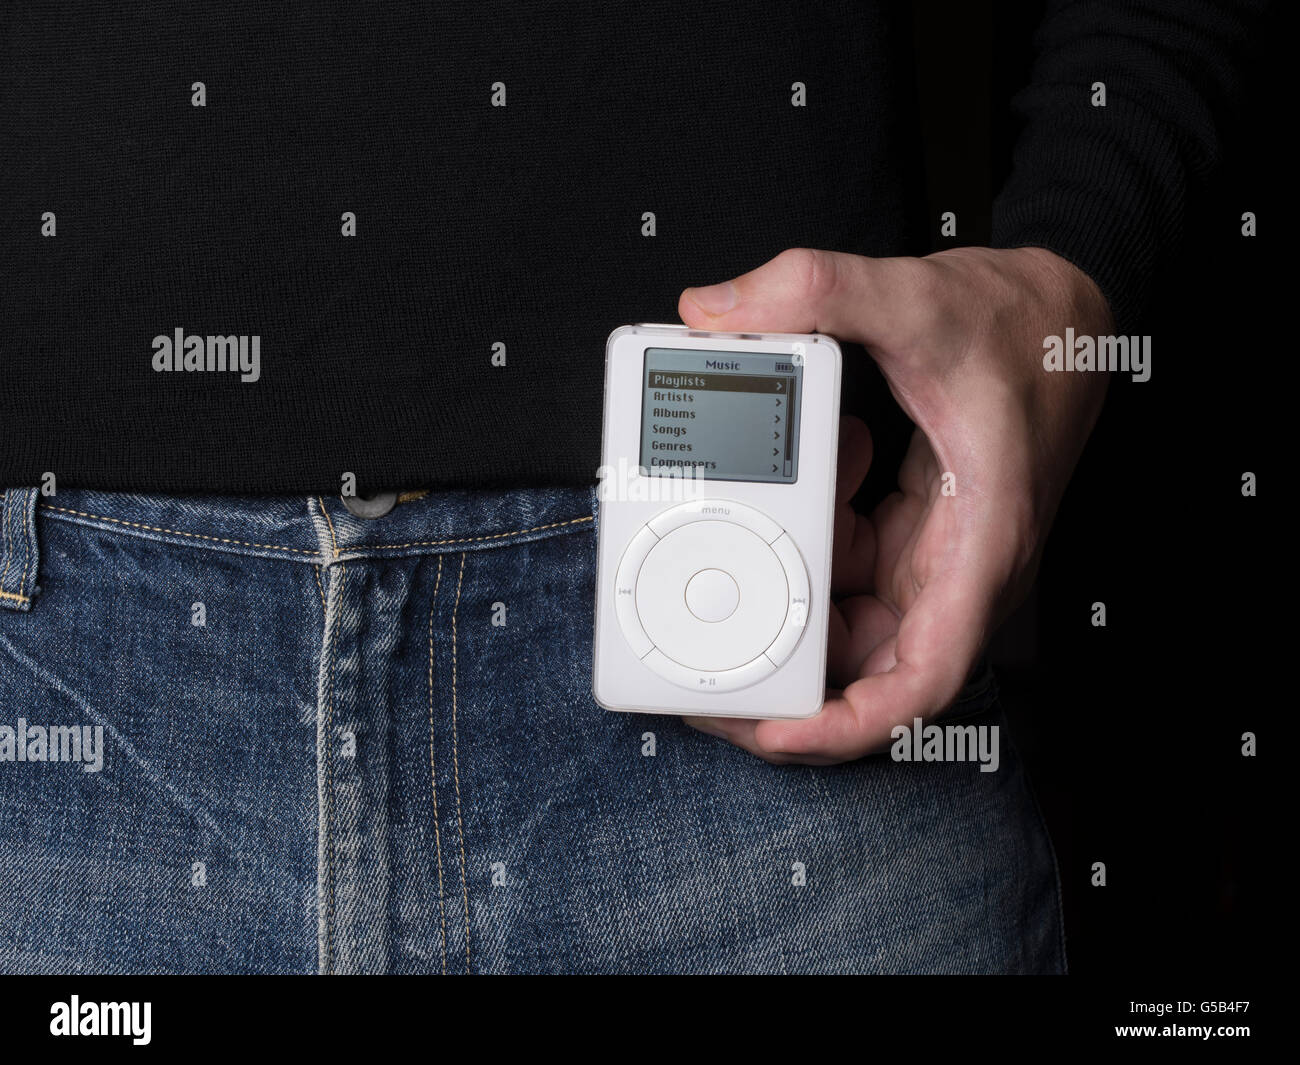 Apple iPod erster Generation, mit mechanischen Scroll-Rad. veröffentlicht 23. Oktober 2001 Stockfoto